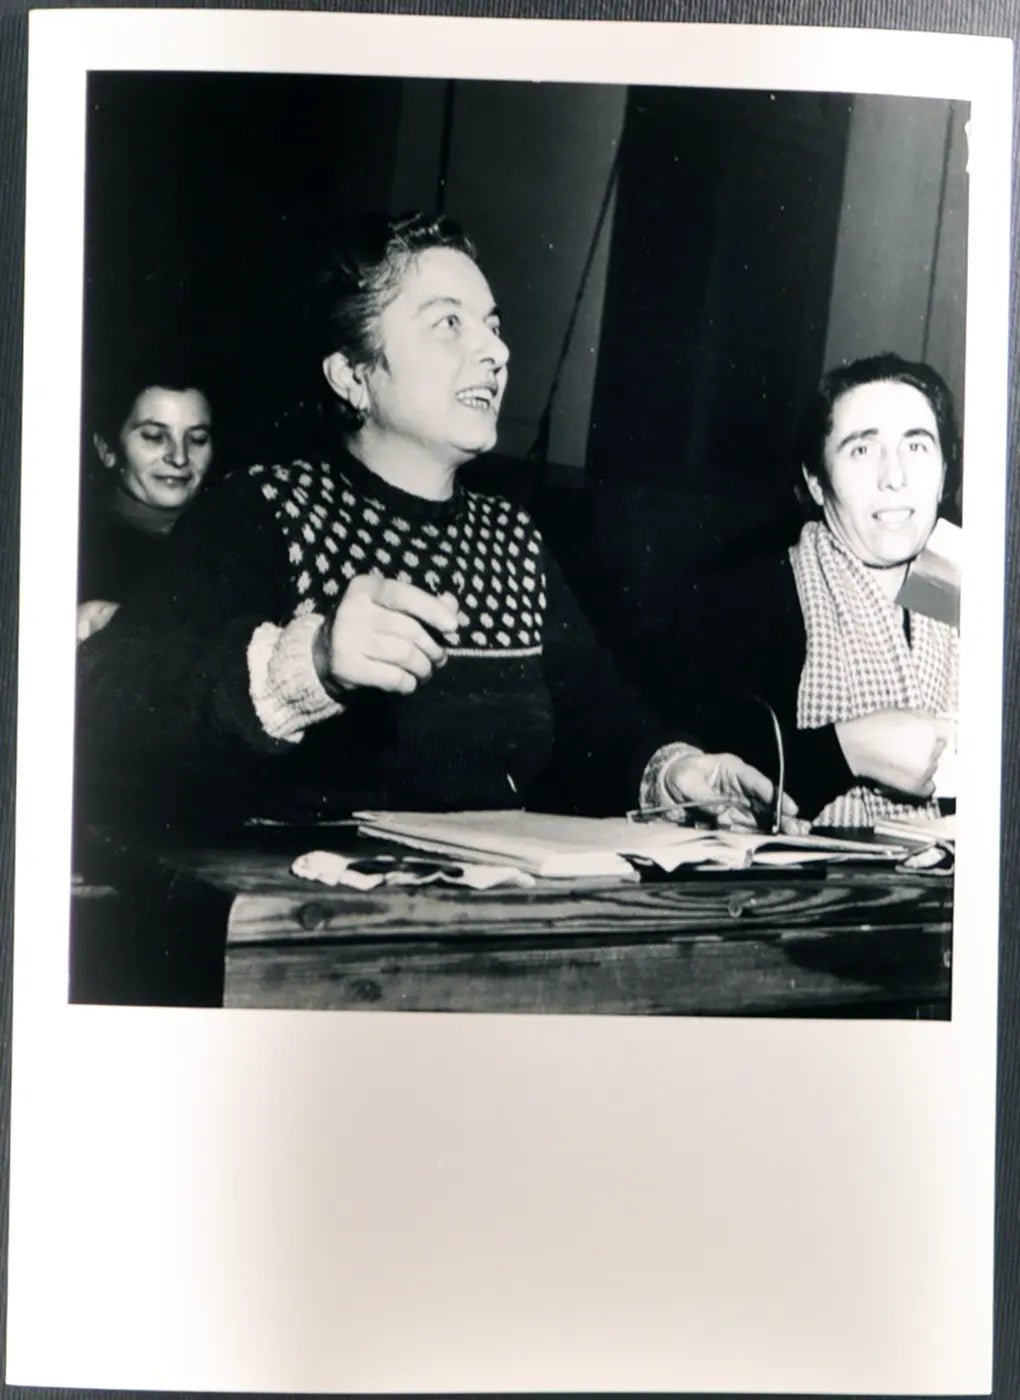 Scuola serale a Milano 1950 Ft 3111 - Stampa 24x18 cm - Farabola Stampa ai sali d'argento (anni 90)